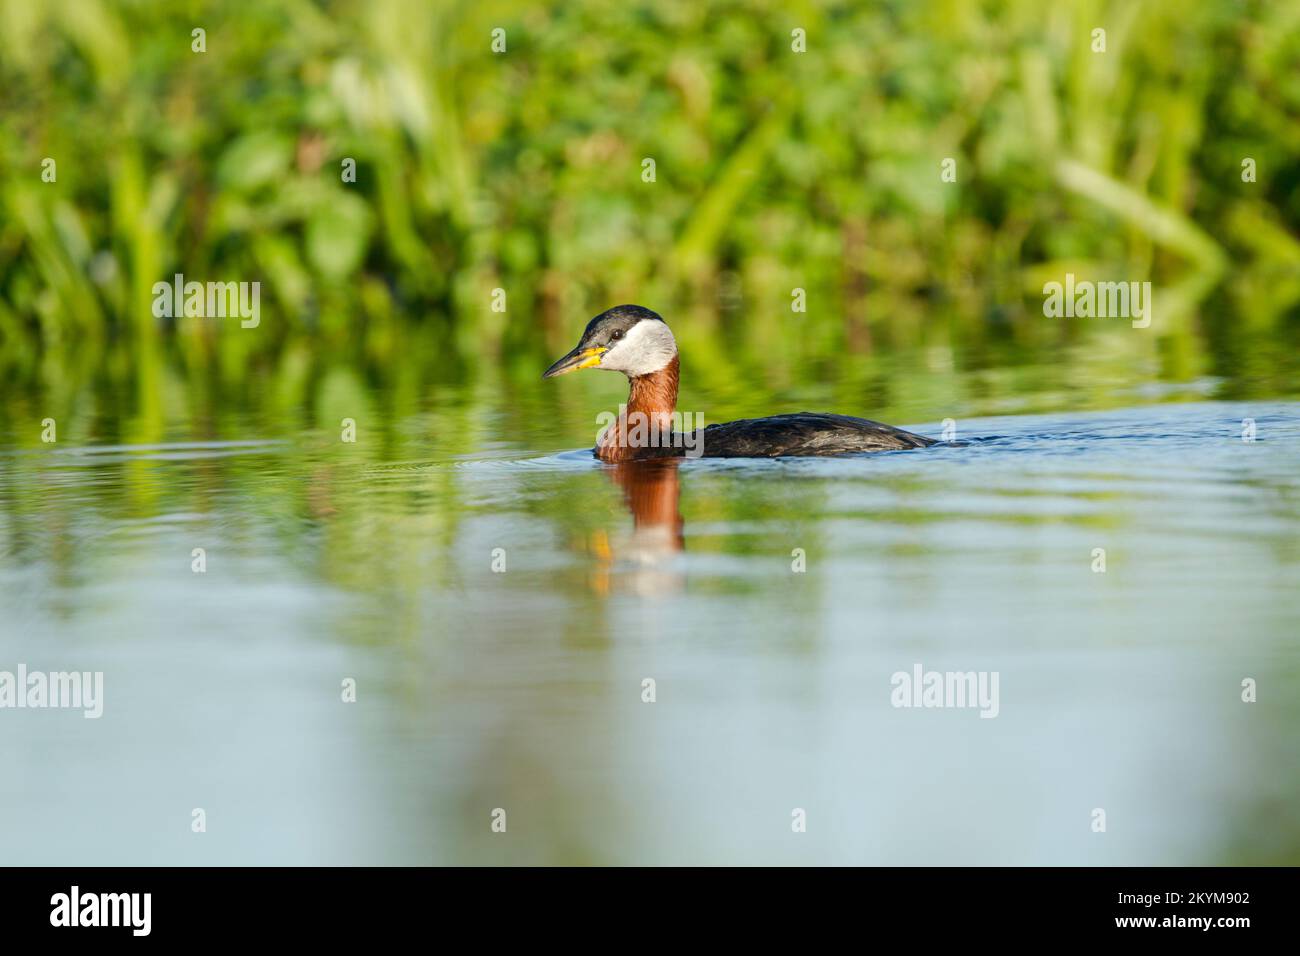 Verde dal collo rosso, Podiceps grisegena, in estate allevamento piumaggio nuoto in acque calme con canne dietro Foto Stock